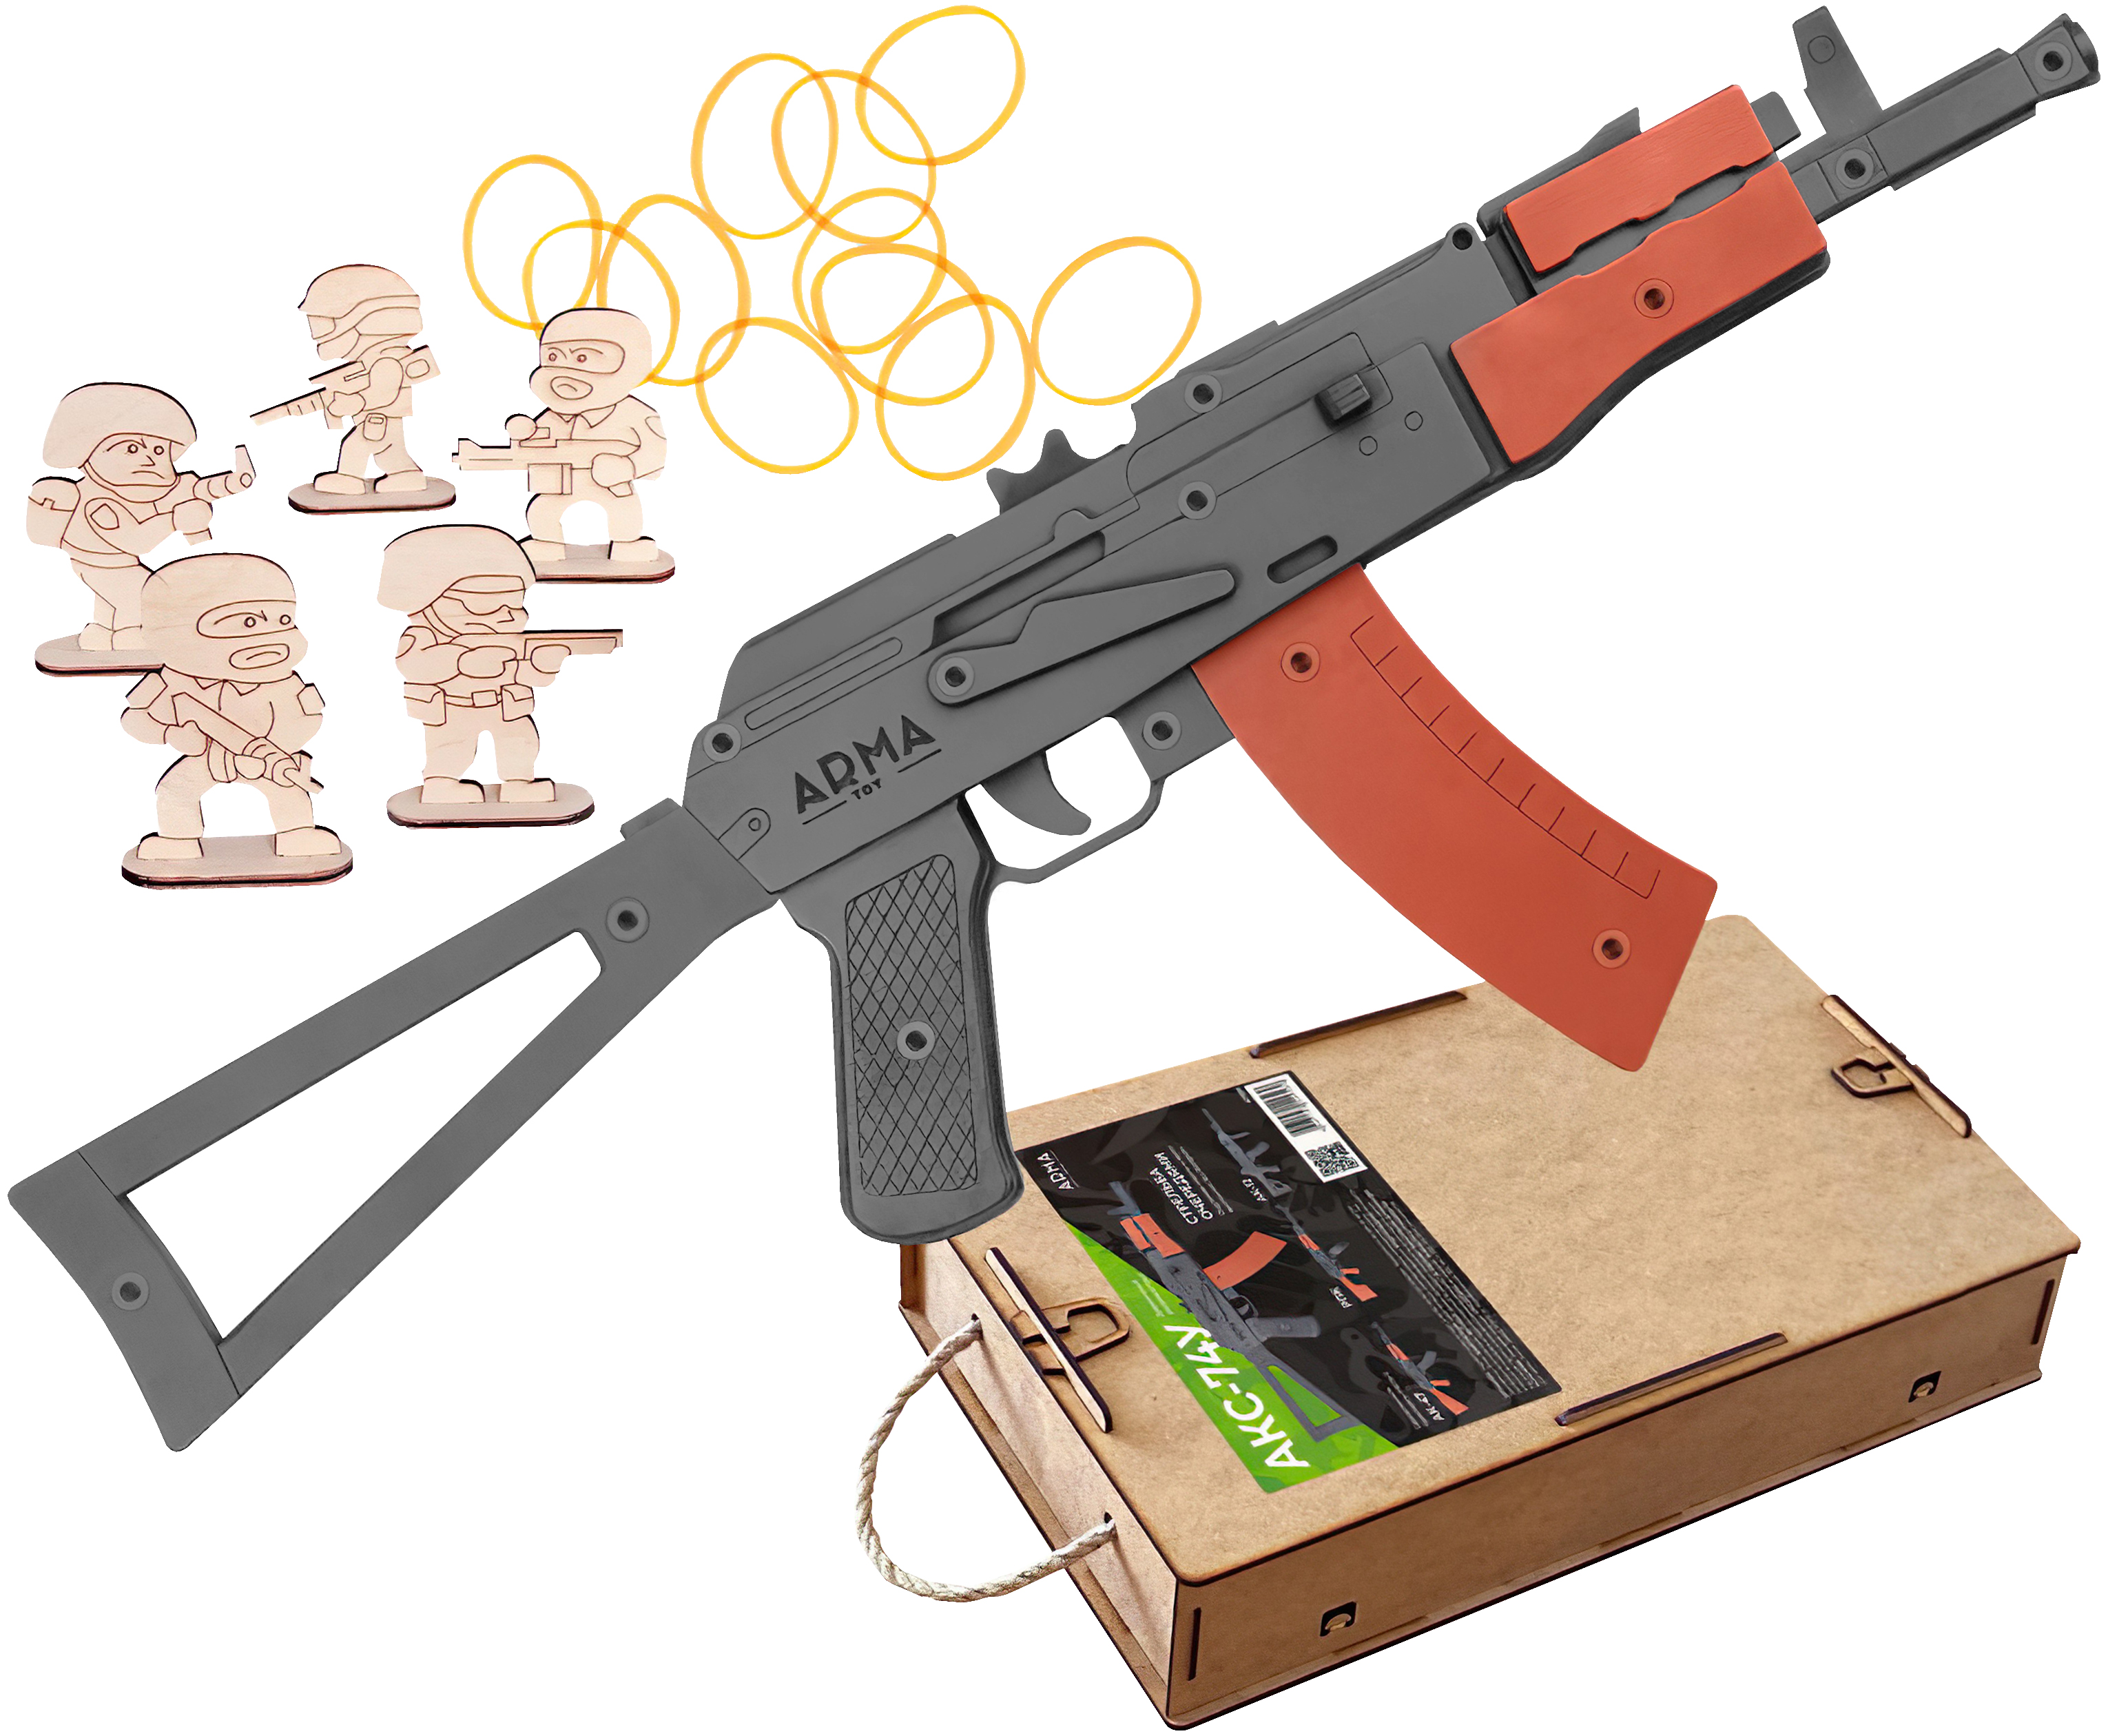 Резинкострел игрушечный Arma toys автомат АКС-74У макет, Калашников, AT036 резинкострел arma toys автомат ак 12 макет калашников at039